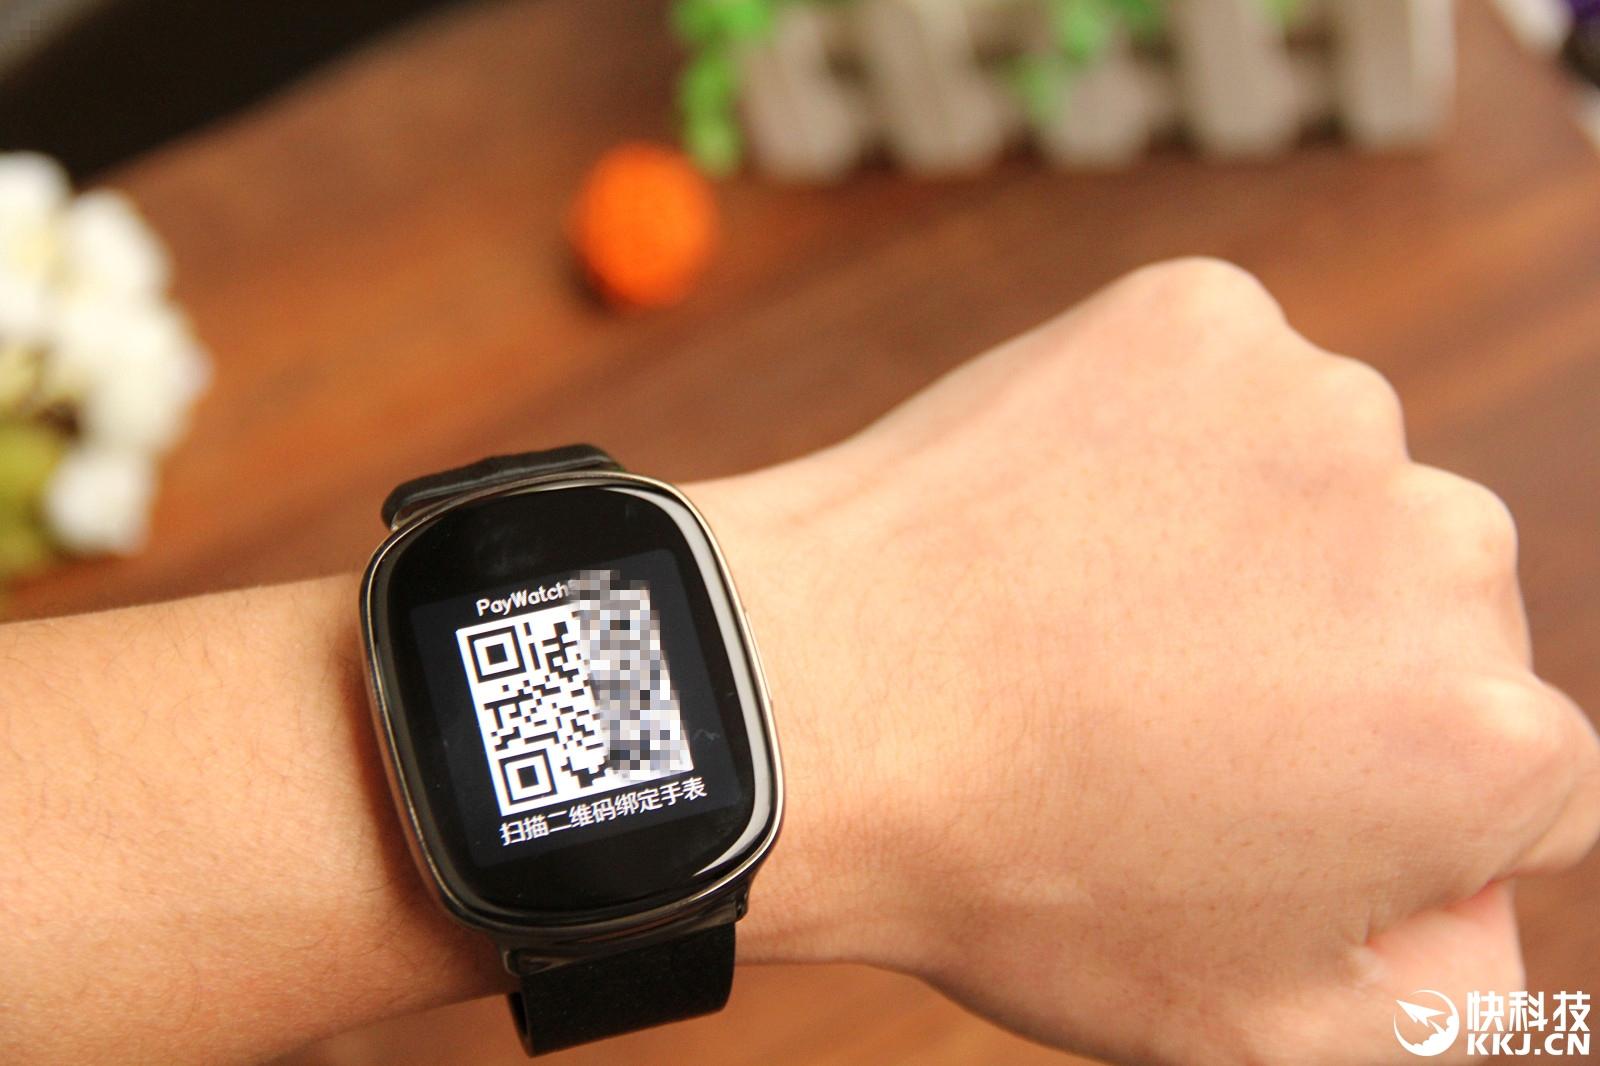 2、买高仿手表的app：德武（毒）上的卡西欧手表是真的吗？